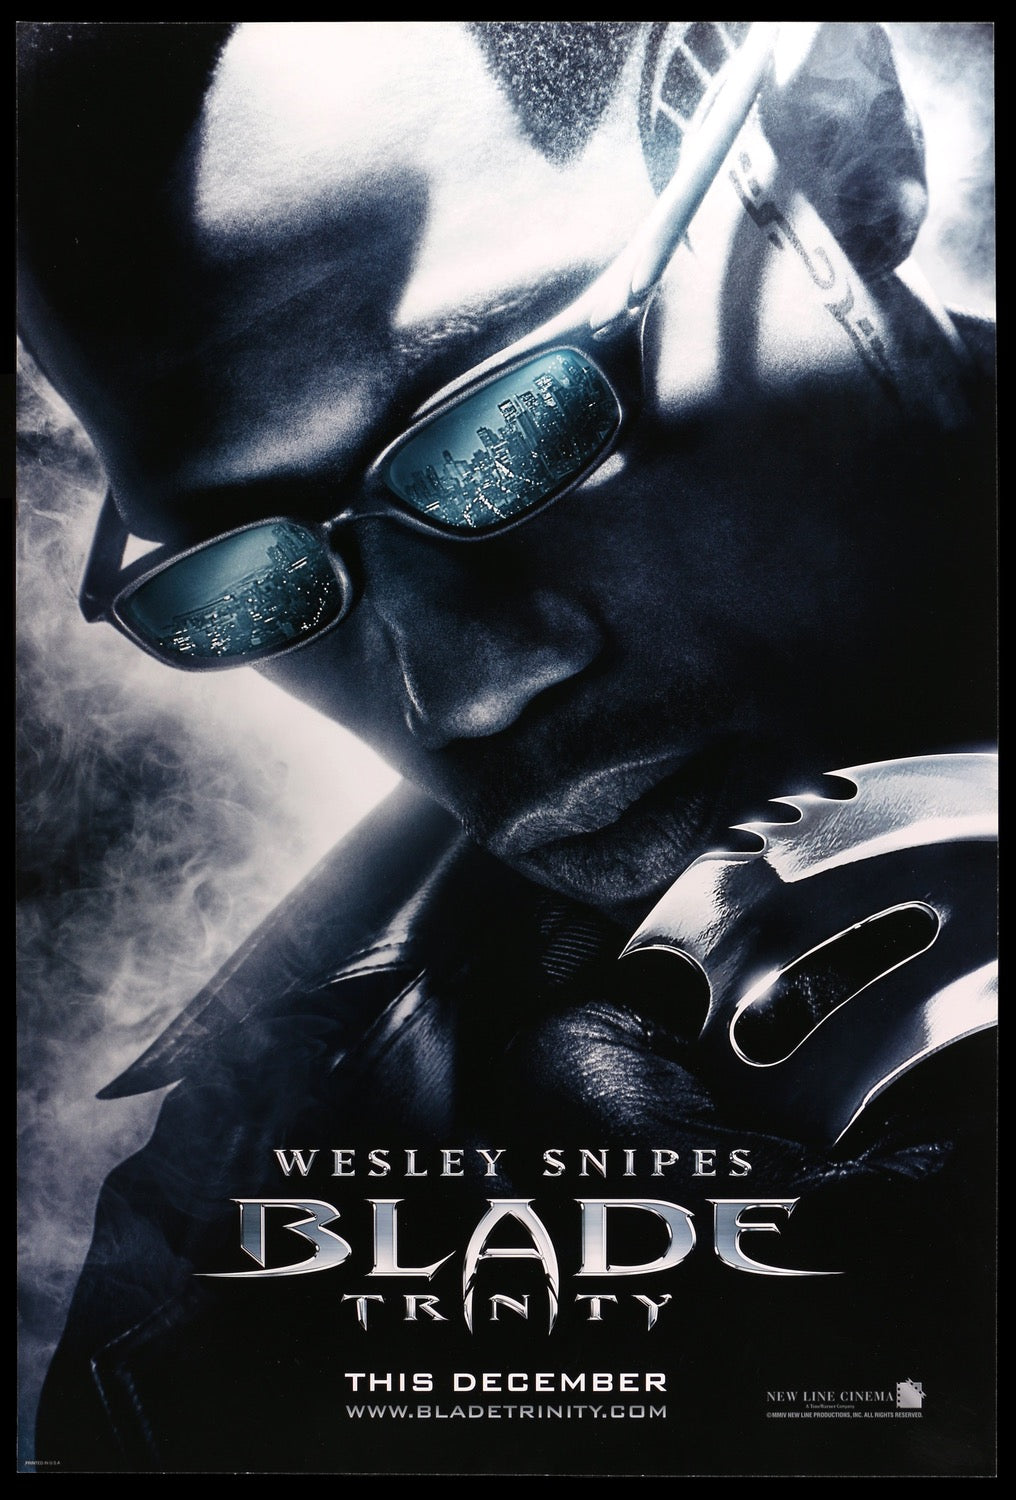 Blade - Trinity (2004) original movie poster for sale at Original Film Art